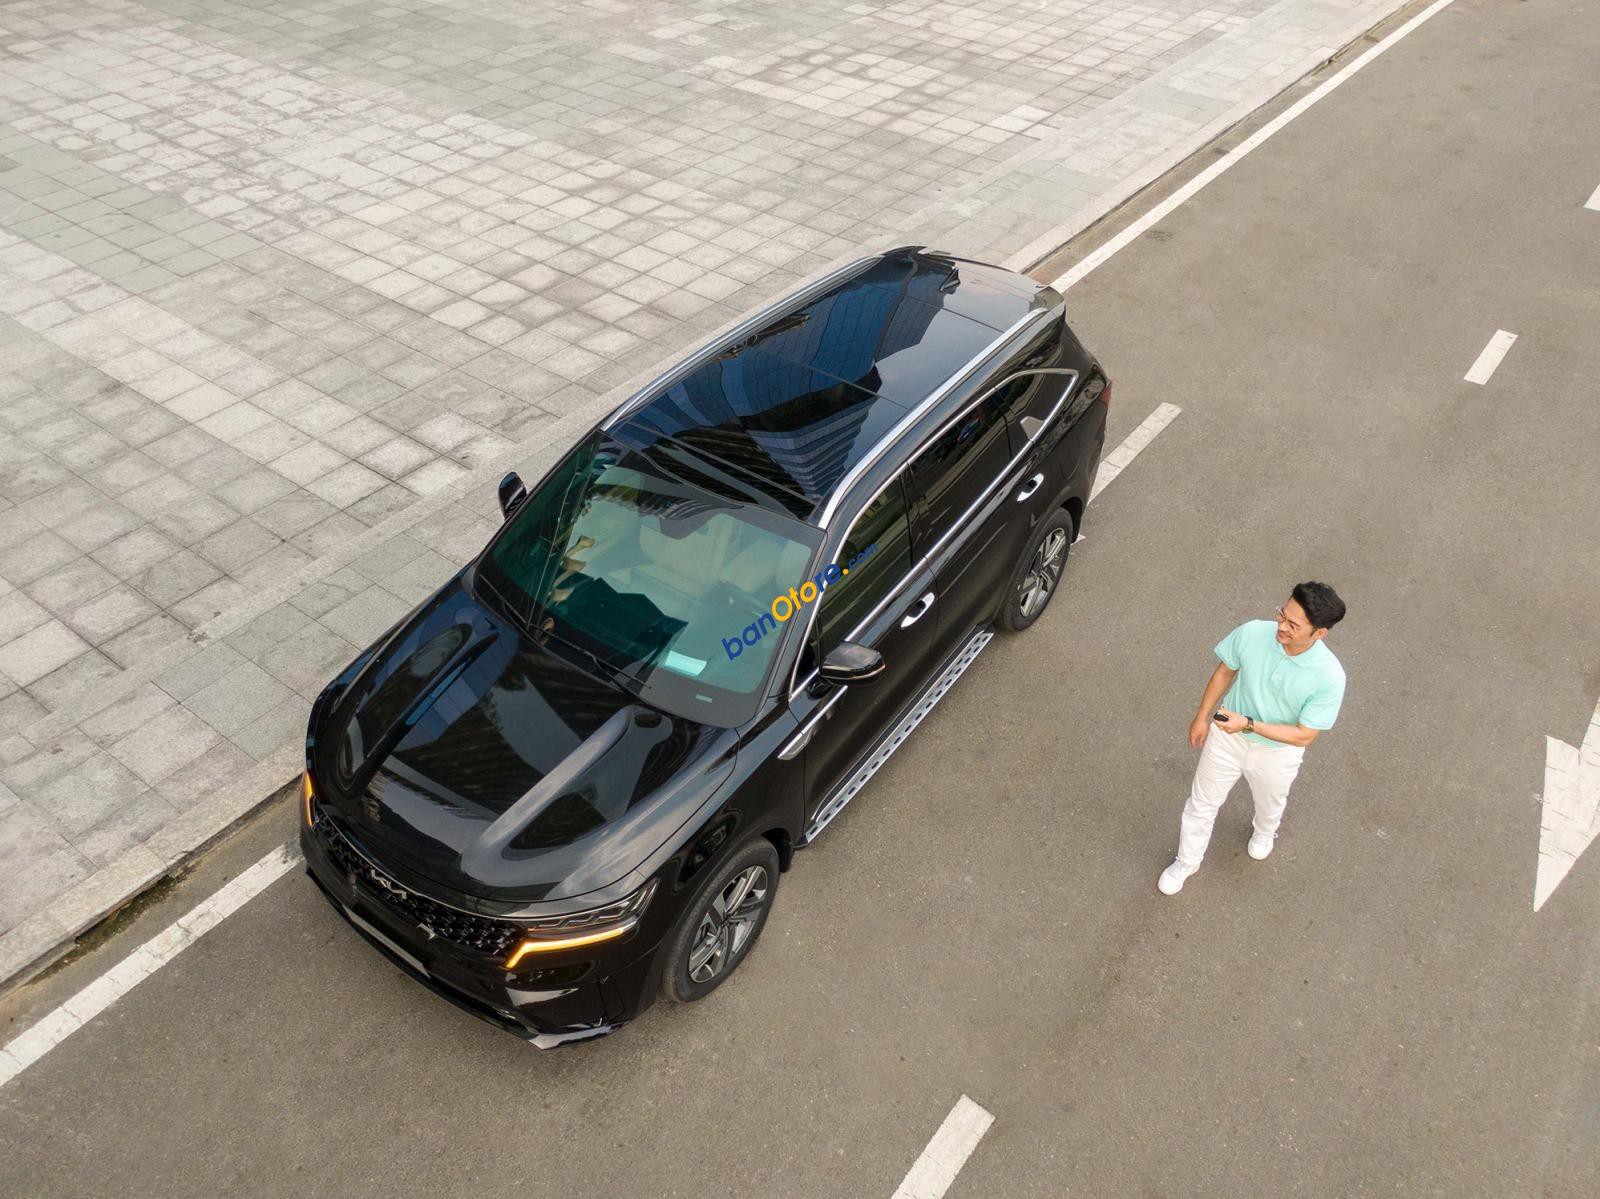 Kia Sorento 2023 - 2.5G Signature 7S nội thất Nâu cực kì bắt mắt kèm giá bán siêu ưu đãi.